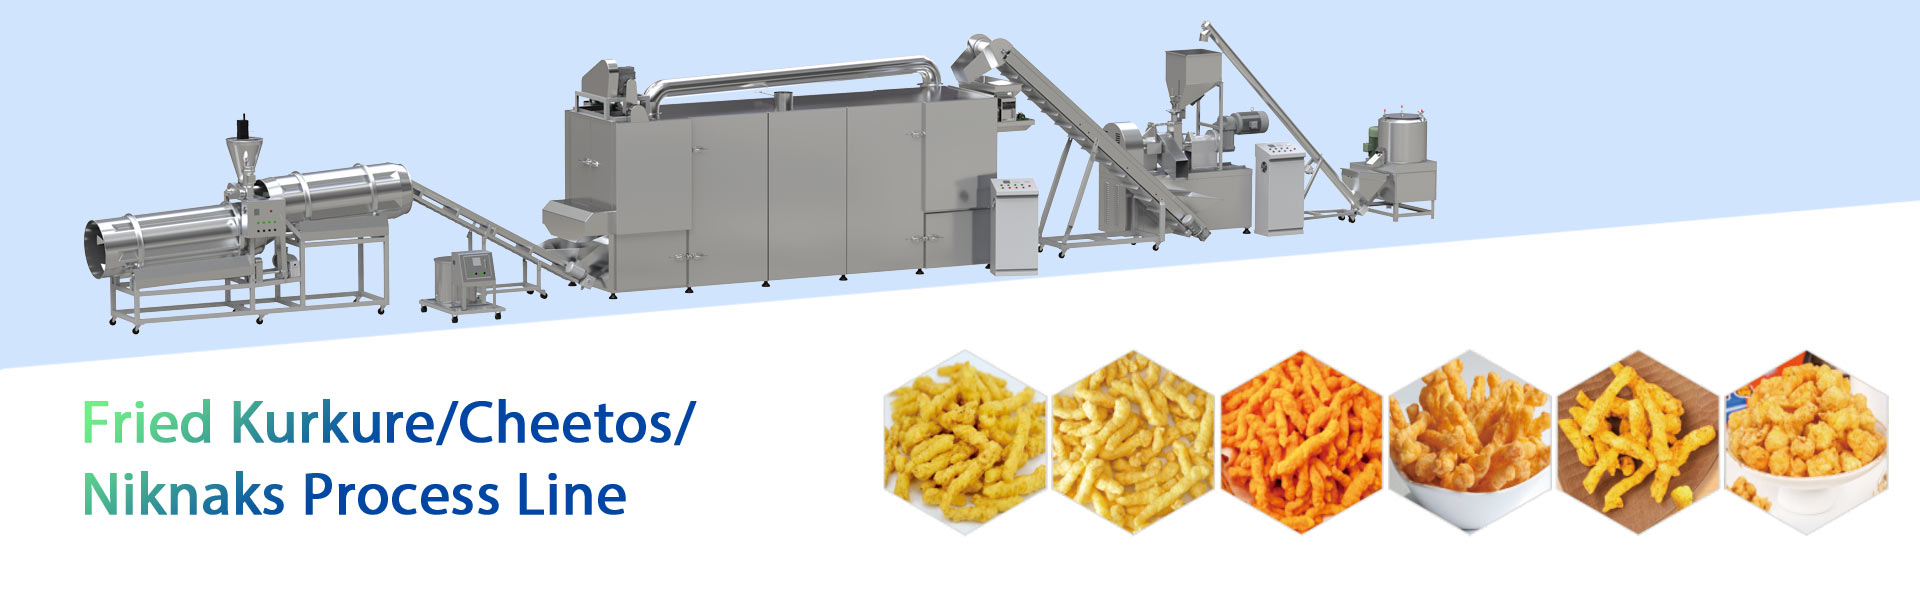 Fried-Kurkure-Cheetos-Niknaks-Process-Line